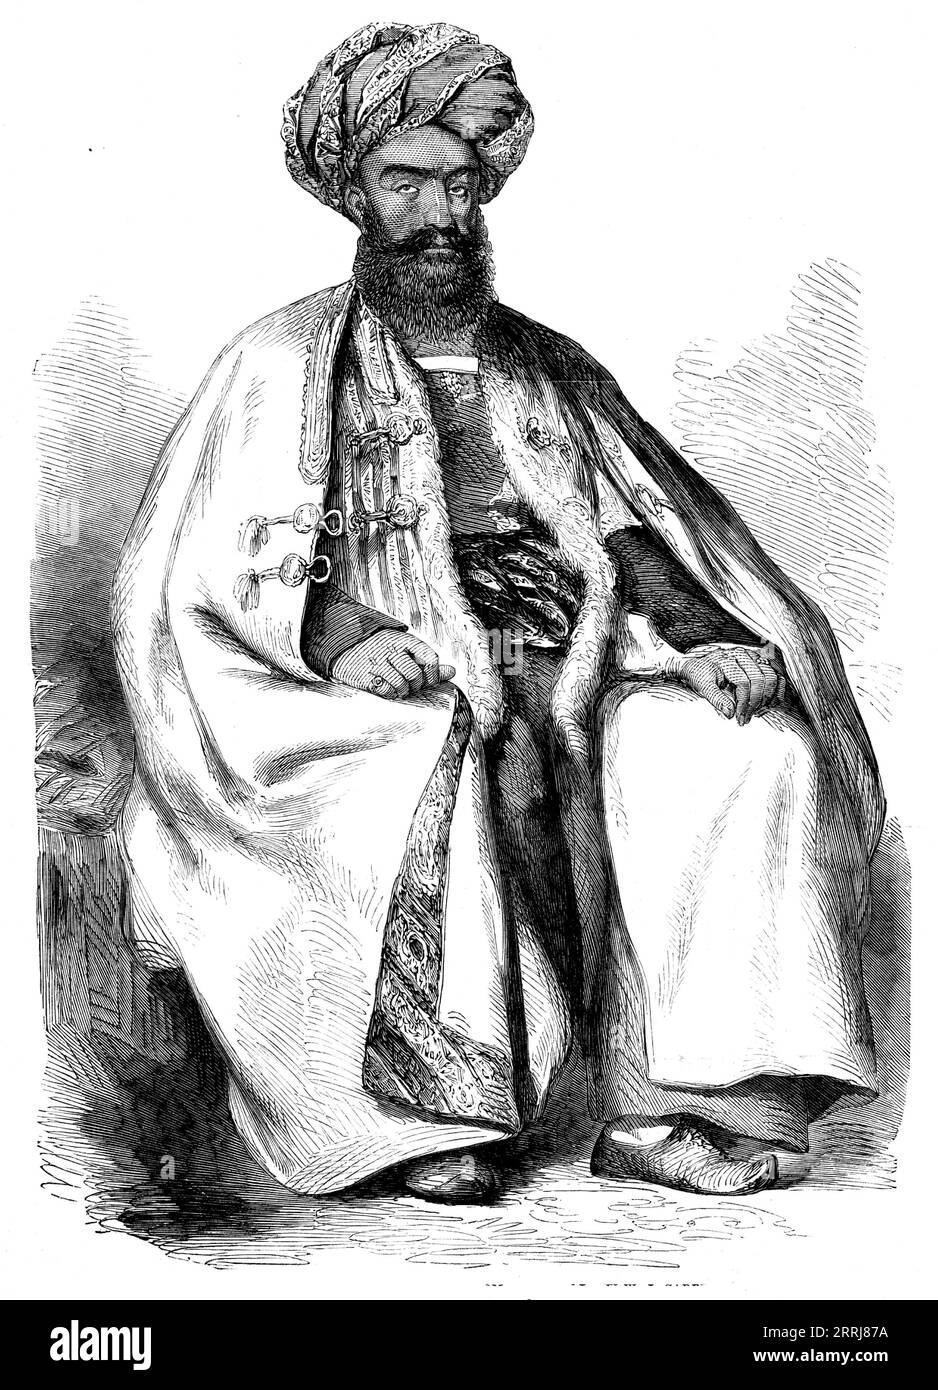 Osman Khan, Wuzeer à Shah Soojah - d'après un dessin de W. Carpenter, juin 1858. « Ce chef noble, après avoir suivi la fortune de son souverain, et avoir partagé les désastres après la retraite de Cabul, a été employé par le gouvernement anglais, et était dans le fort d'Attock lorsque la seconde guerre sikh a éclaté. Il est attaqué par les Sikhs, et la garnison est obligée, après une défense énergique, de capituler. Lors de la colonisation du Punjaub, il se retira à Peshawur, où il vit depuis, très respecté par les autochtones et les Européens. Extrait de "Illustrated London News", 1858. Banque D'Images